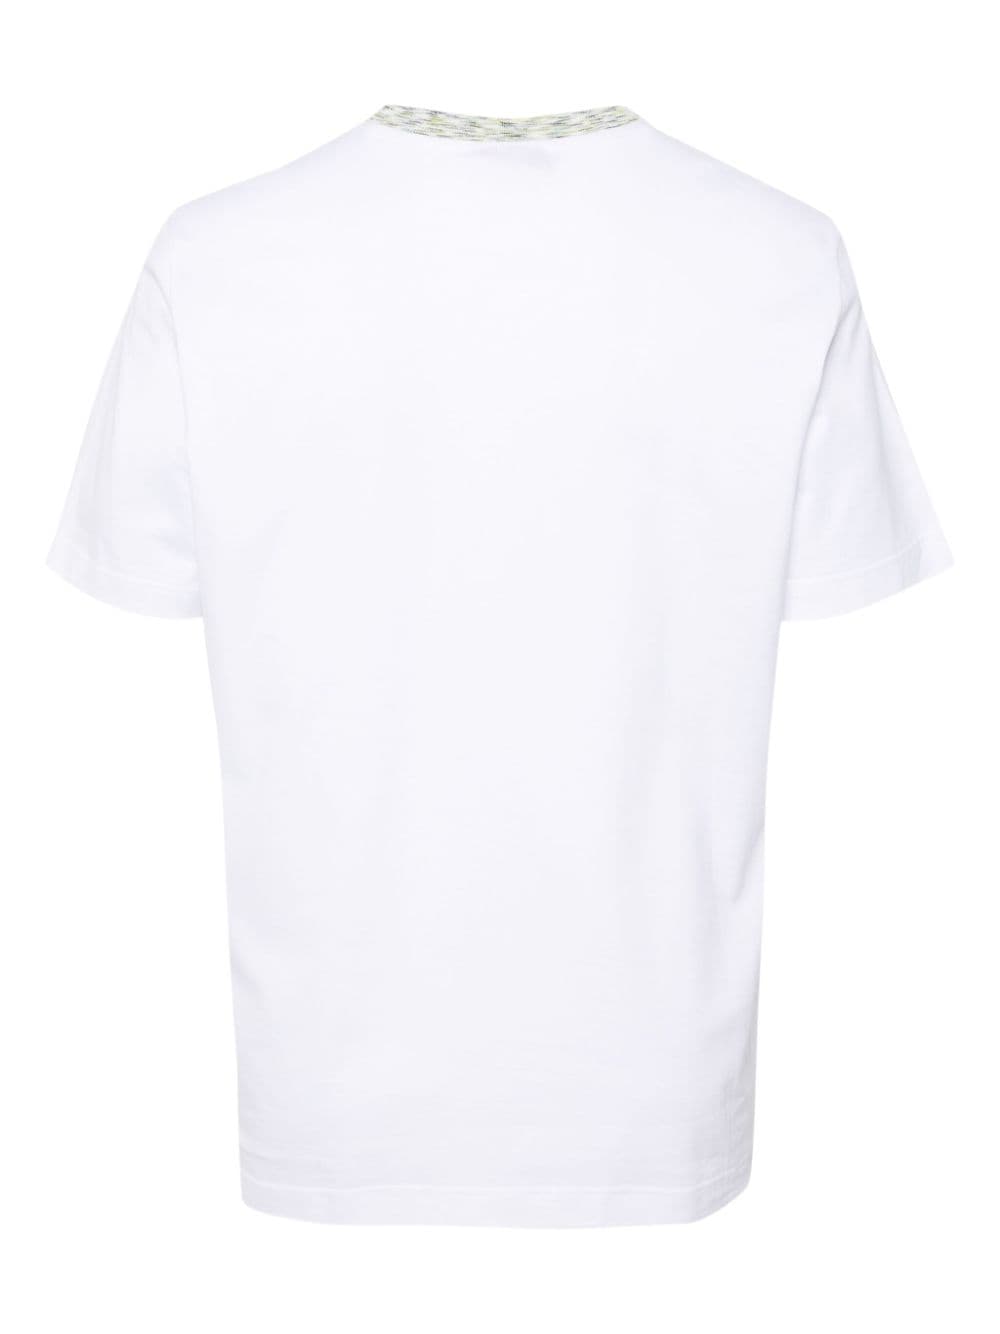 T-shirt blanc avec broderie